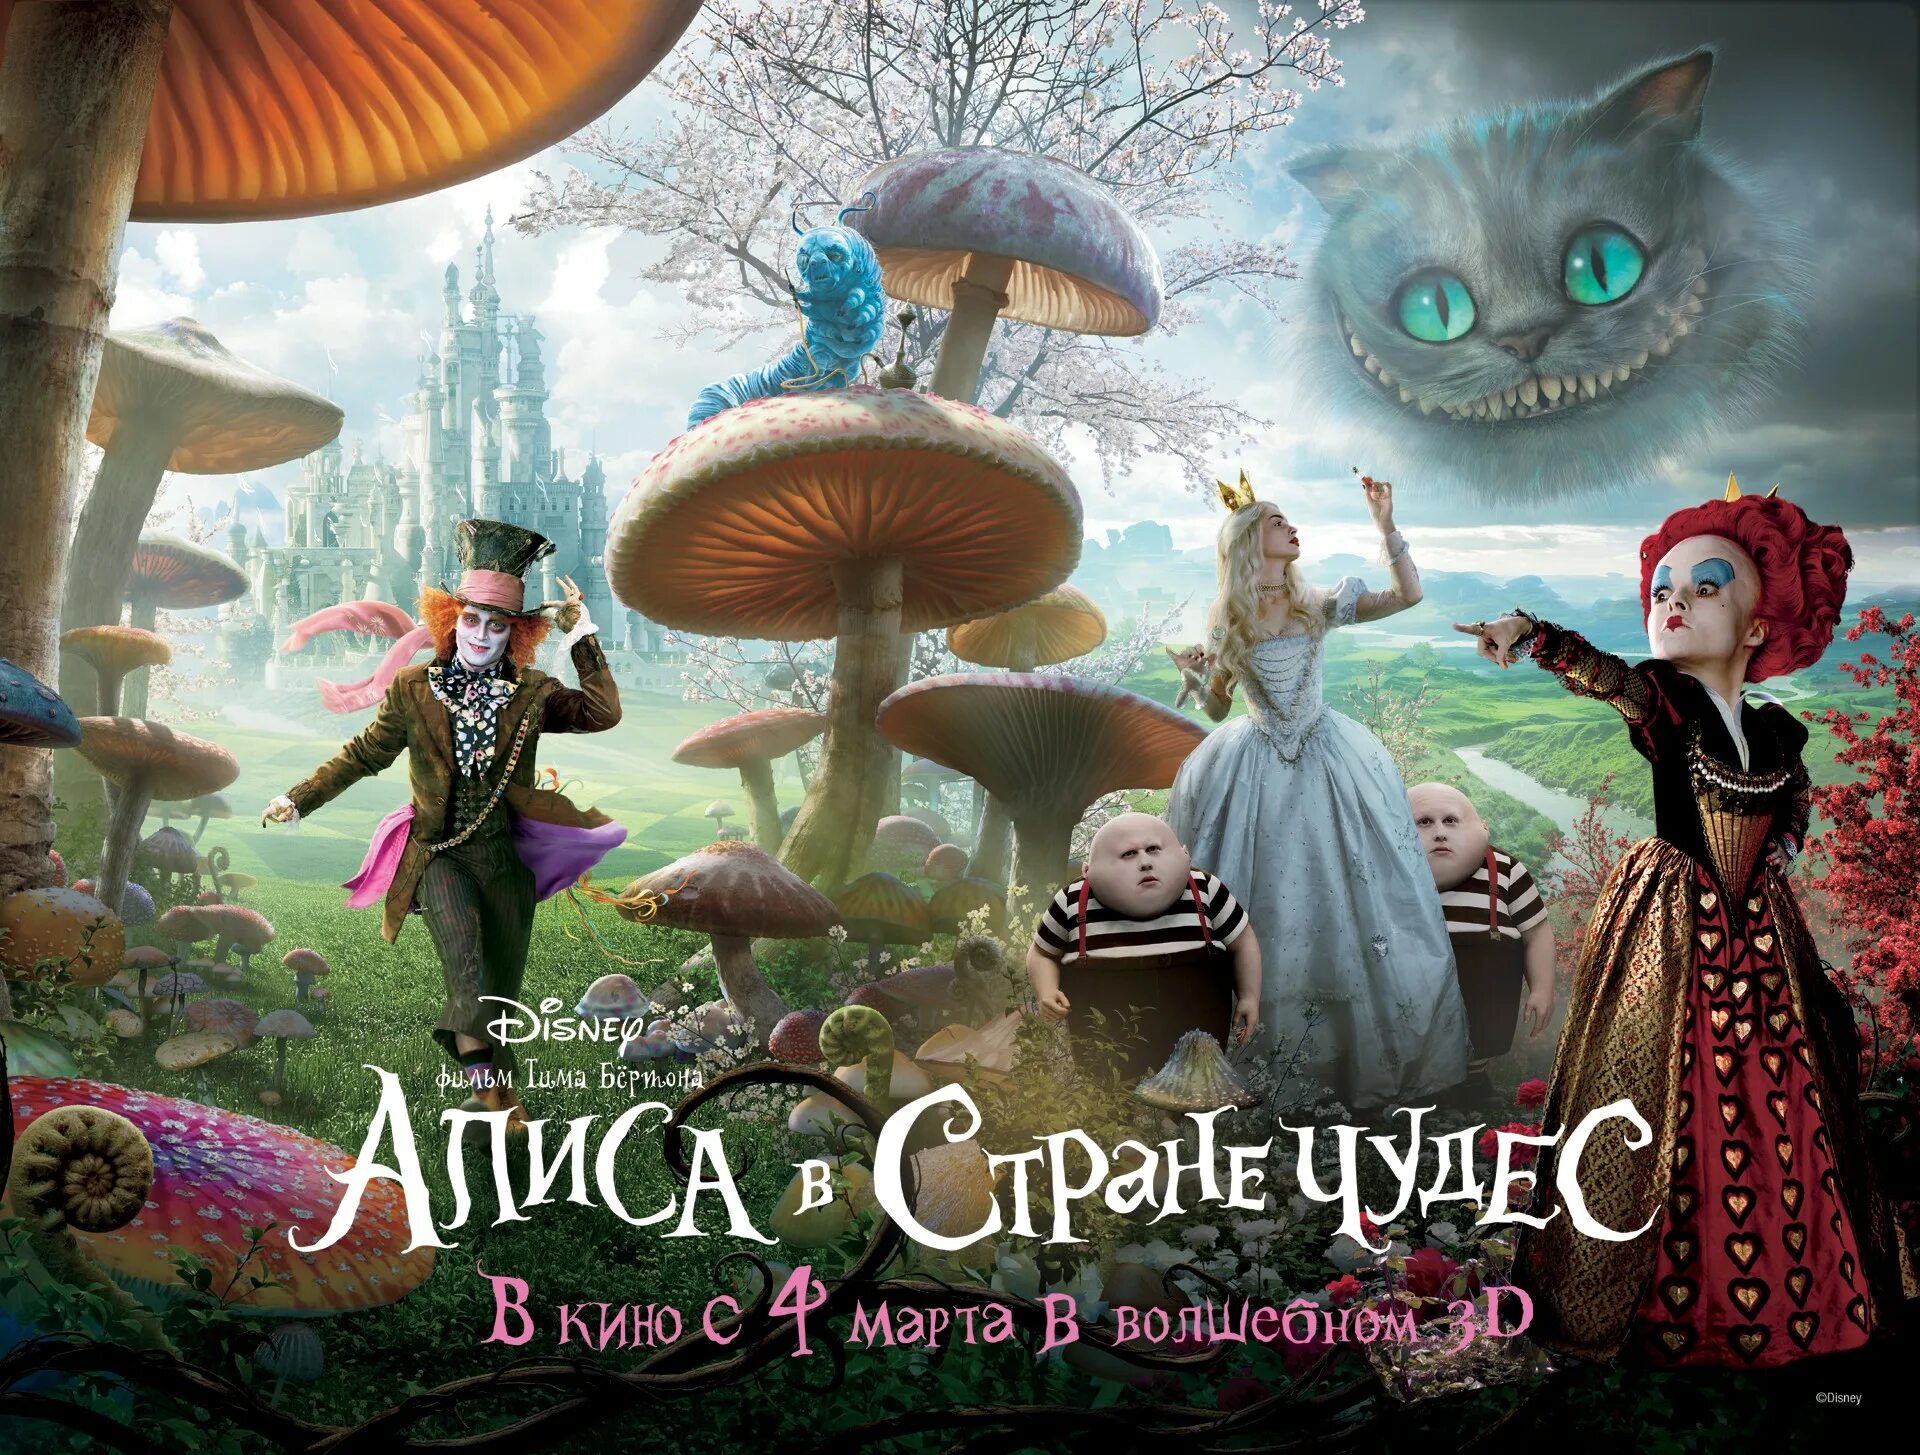 Мир страны чудес. Фон Алиса в стране чудес тим Бертон. Алиса в стране чудес Бертон. «Алиса в стране чудес» (2010) Волшебный сад. Алиса в Зазеркалье.